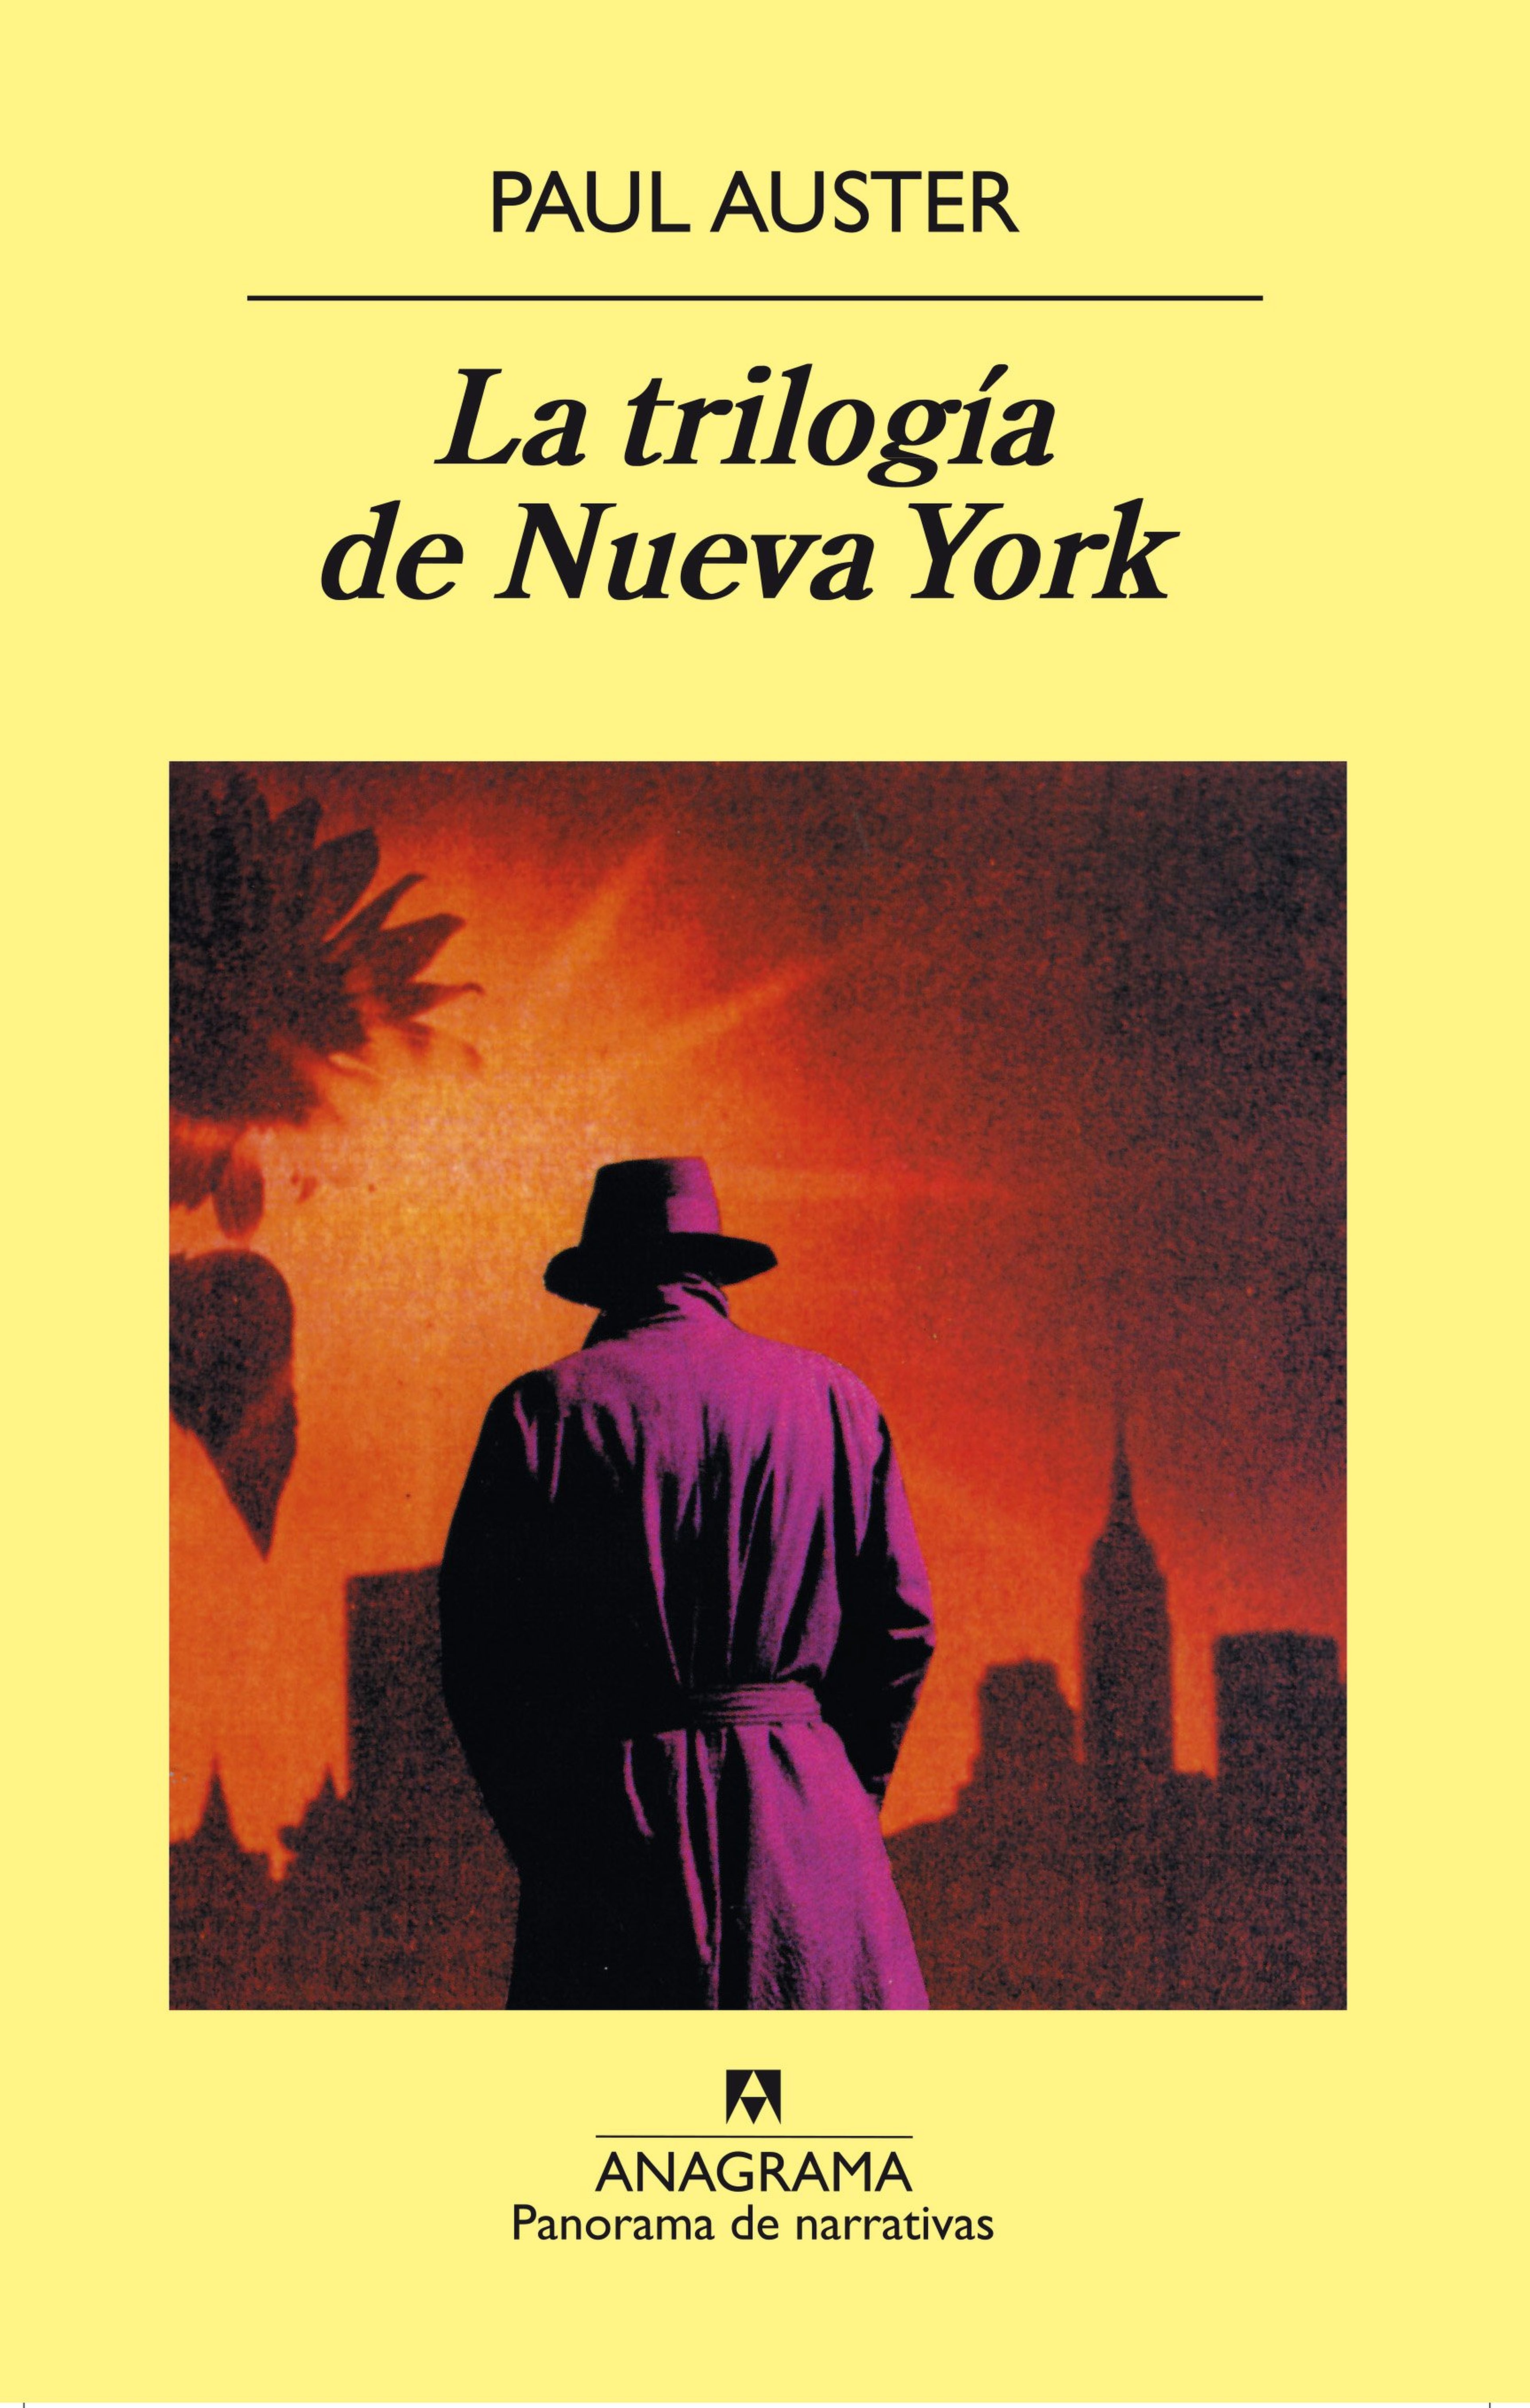 Muere Paul Auster, uno de los autores más prolíficos de nuestro tiempo que nos atrapó con La trilogía de Nueva York 